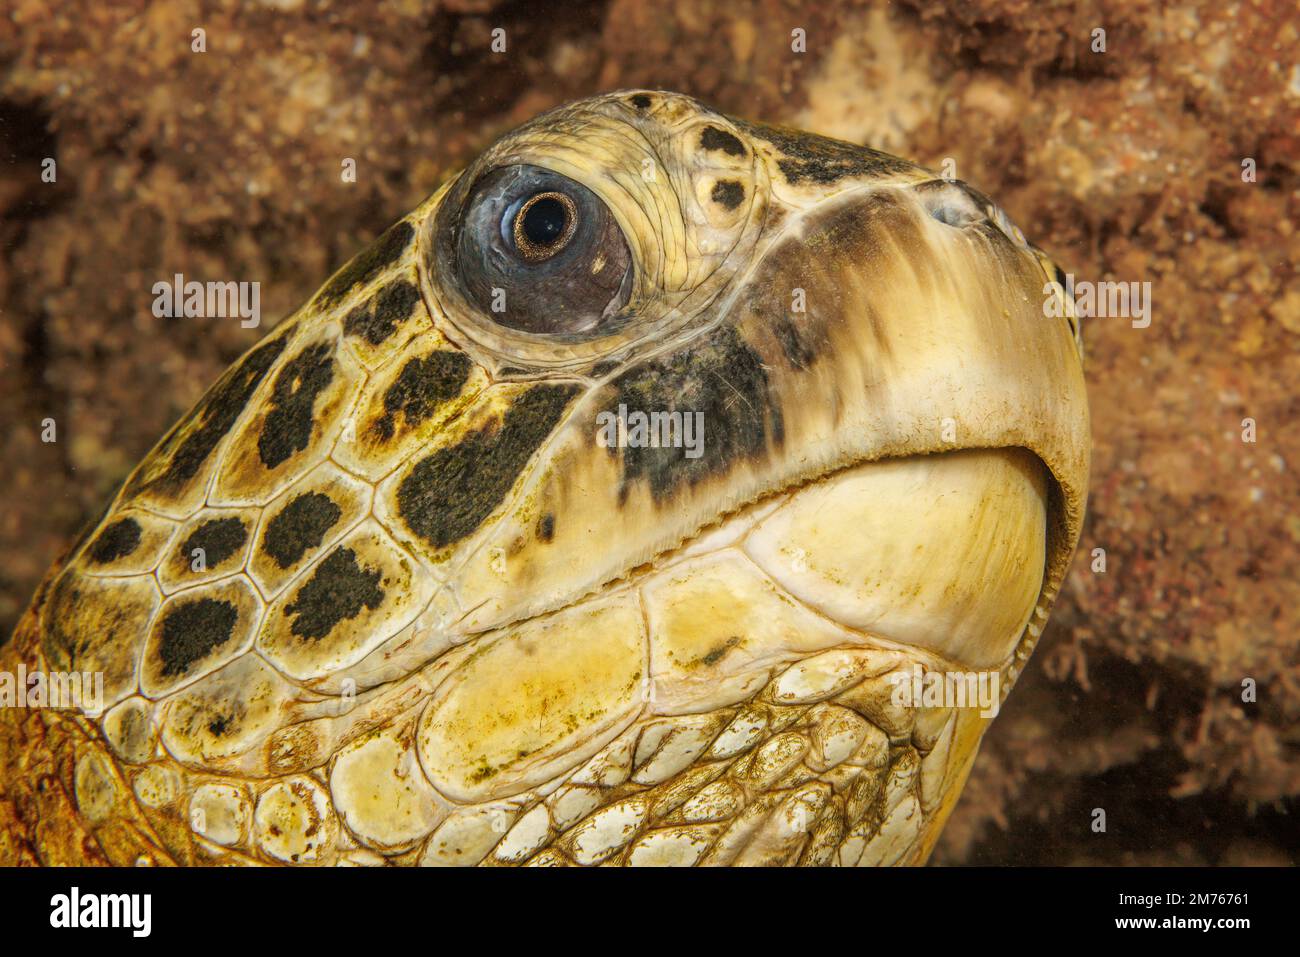 Un'occhiata da vicino alla testa di una tartaruga di mare verde, Chelonia mydas, una specie in via di estinzione, al largo di Maui, Hawaii. Foto Stock